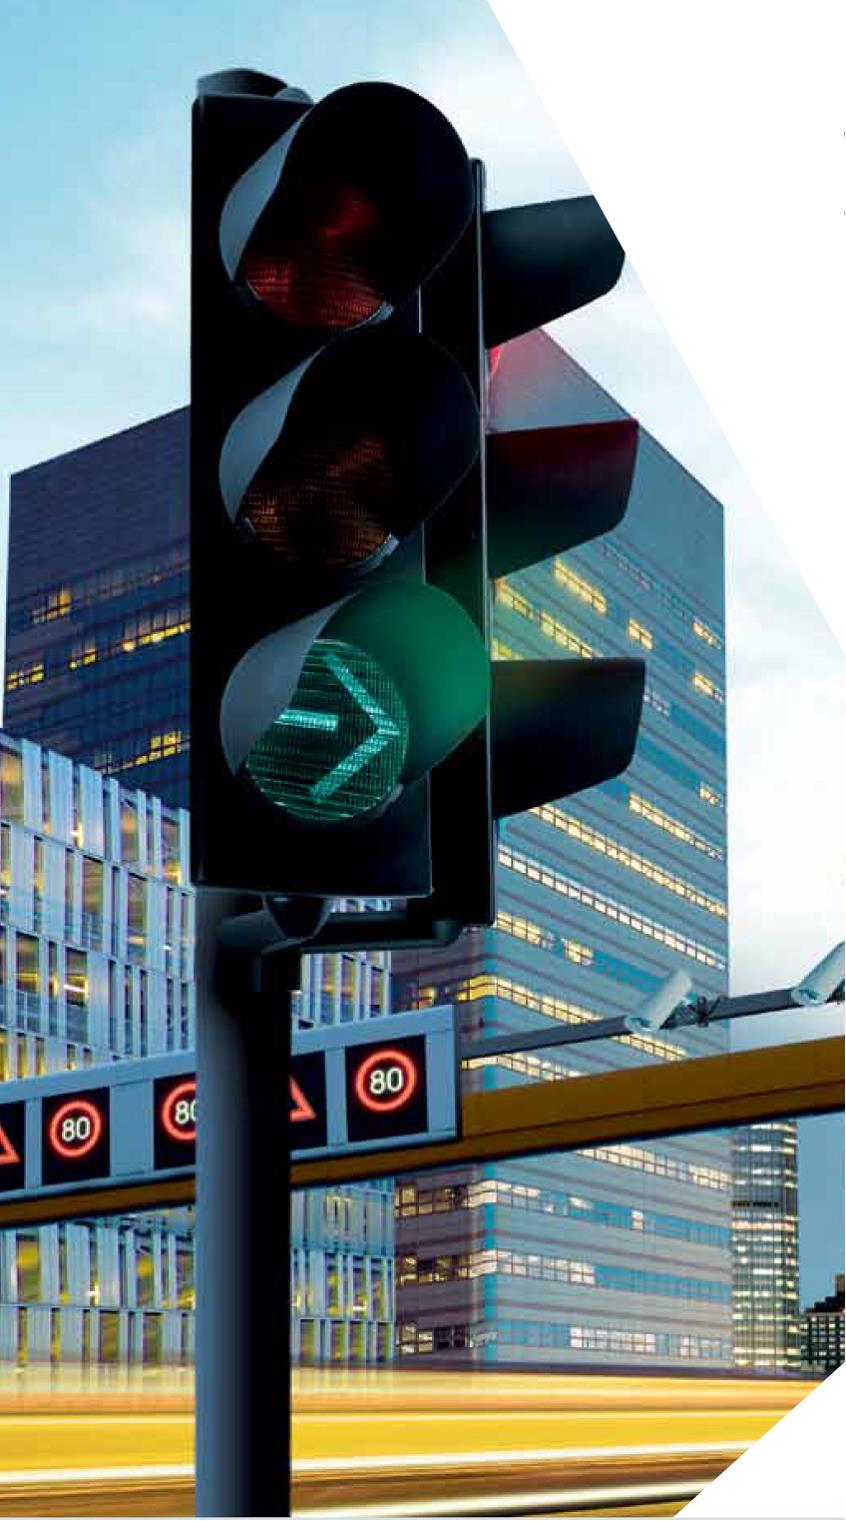 Sistema de prioridade de semáforos em Ludwigsburg